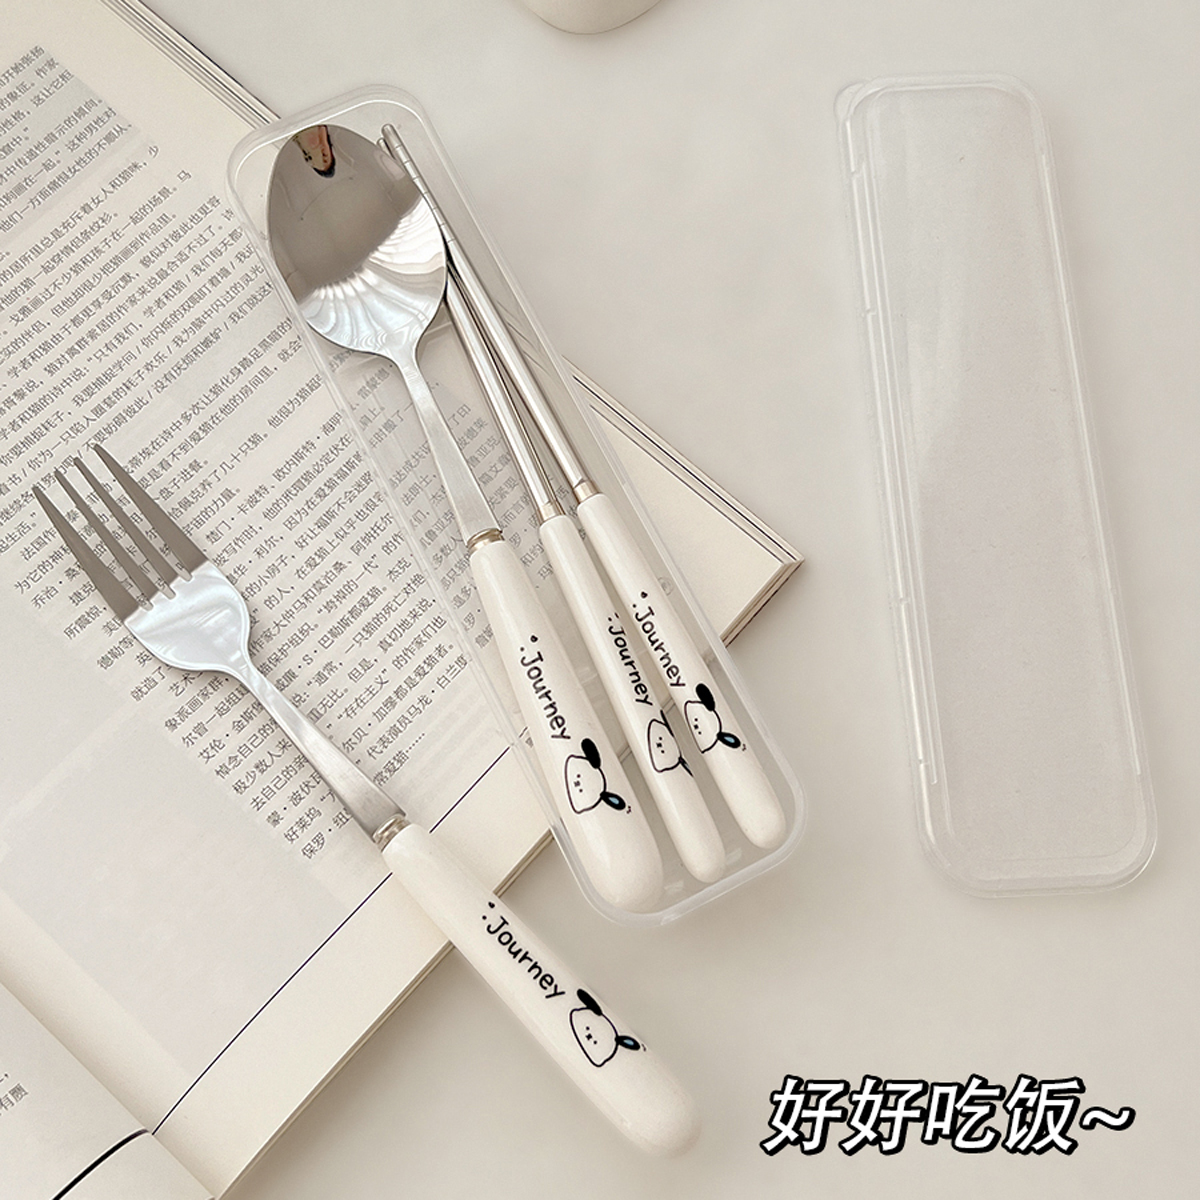 可爱筷子勺子套装一人用叉子学生不锈钢餐具收纳盒三件套便携儿童